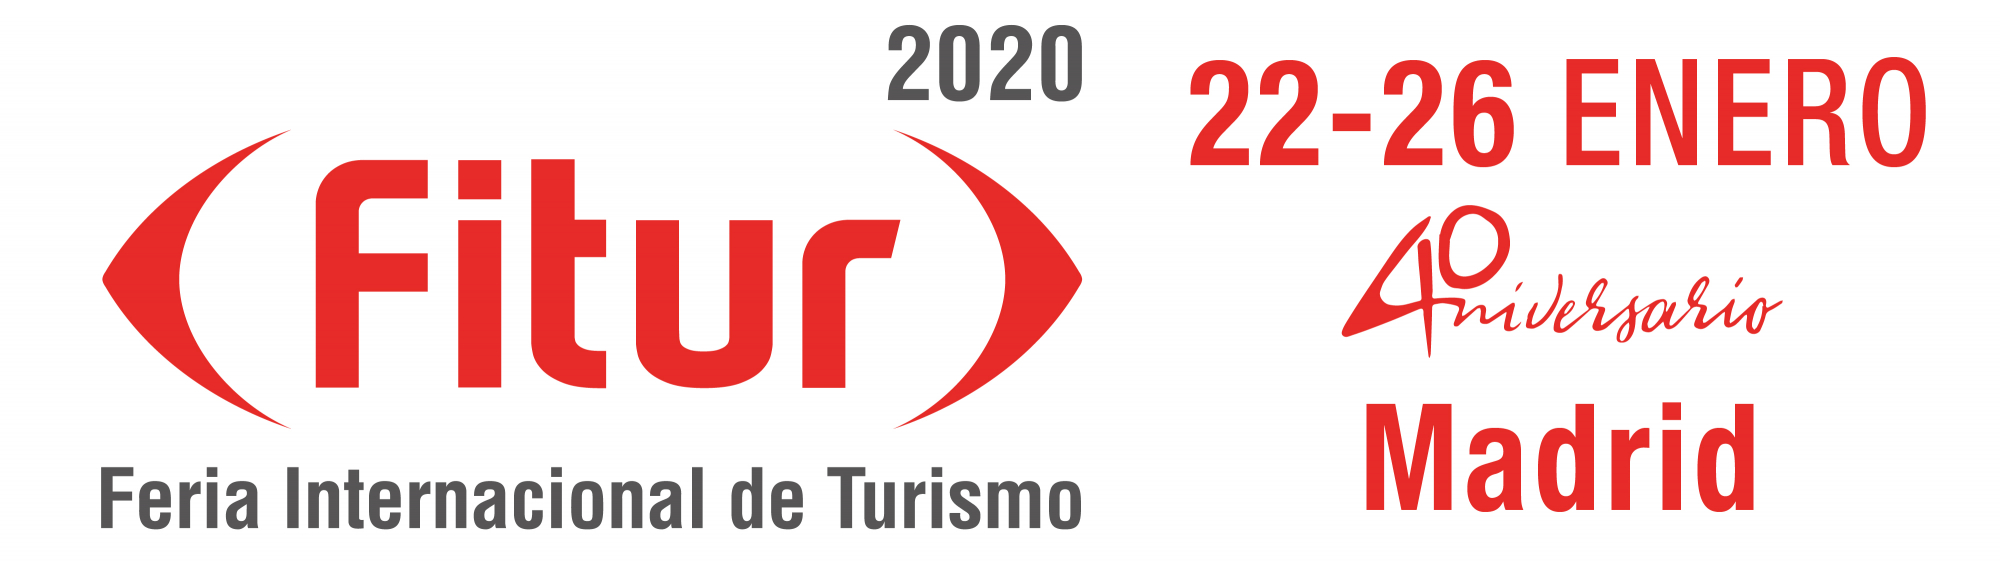 Logotipo FITUR 2020